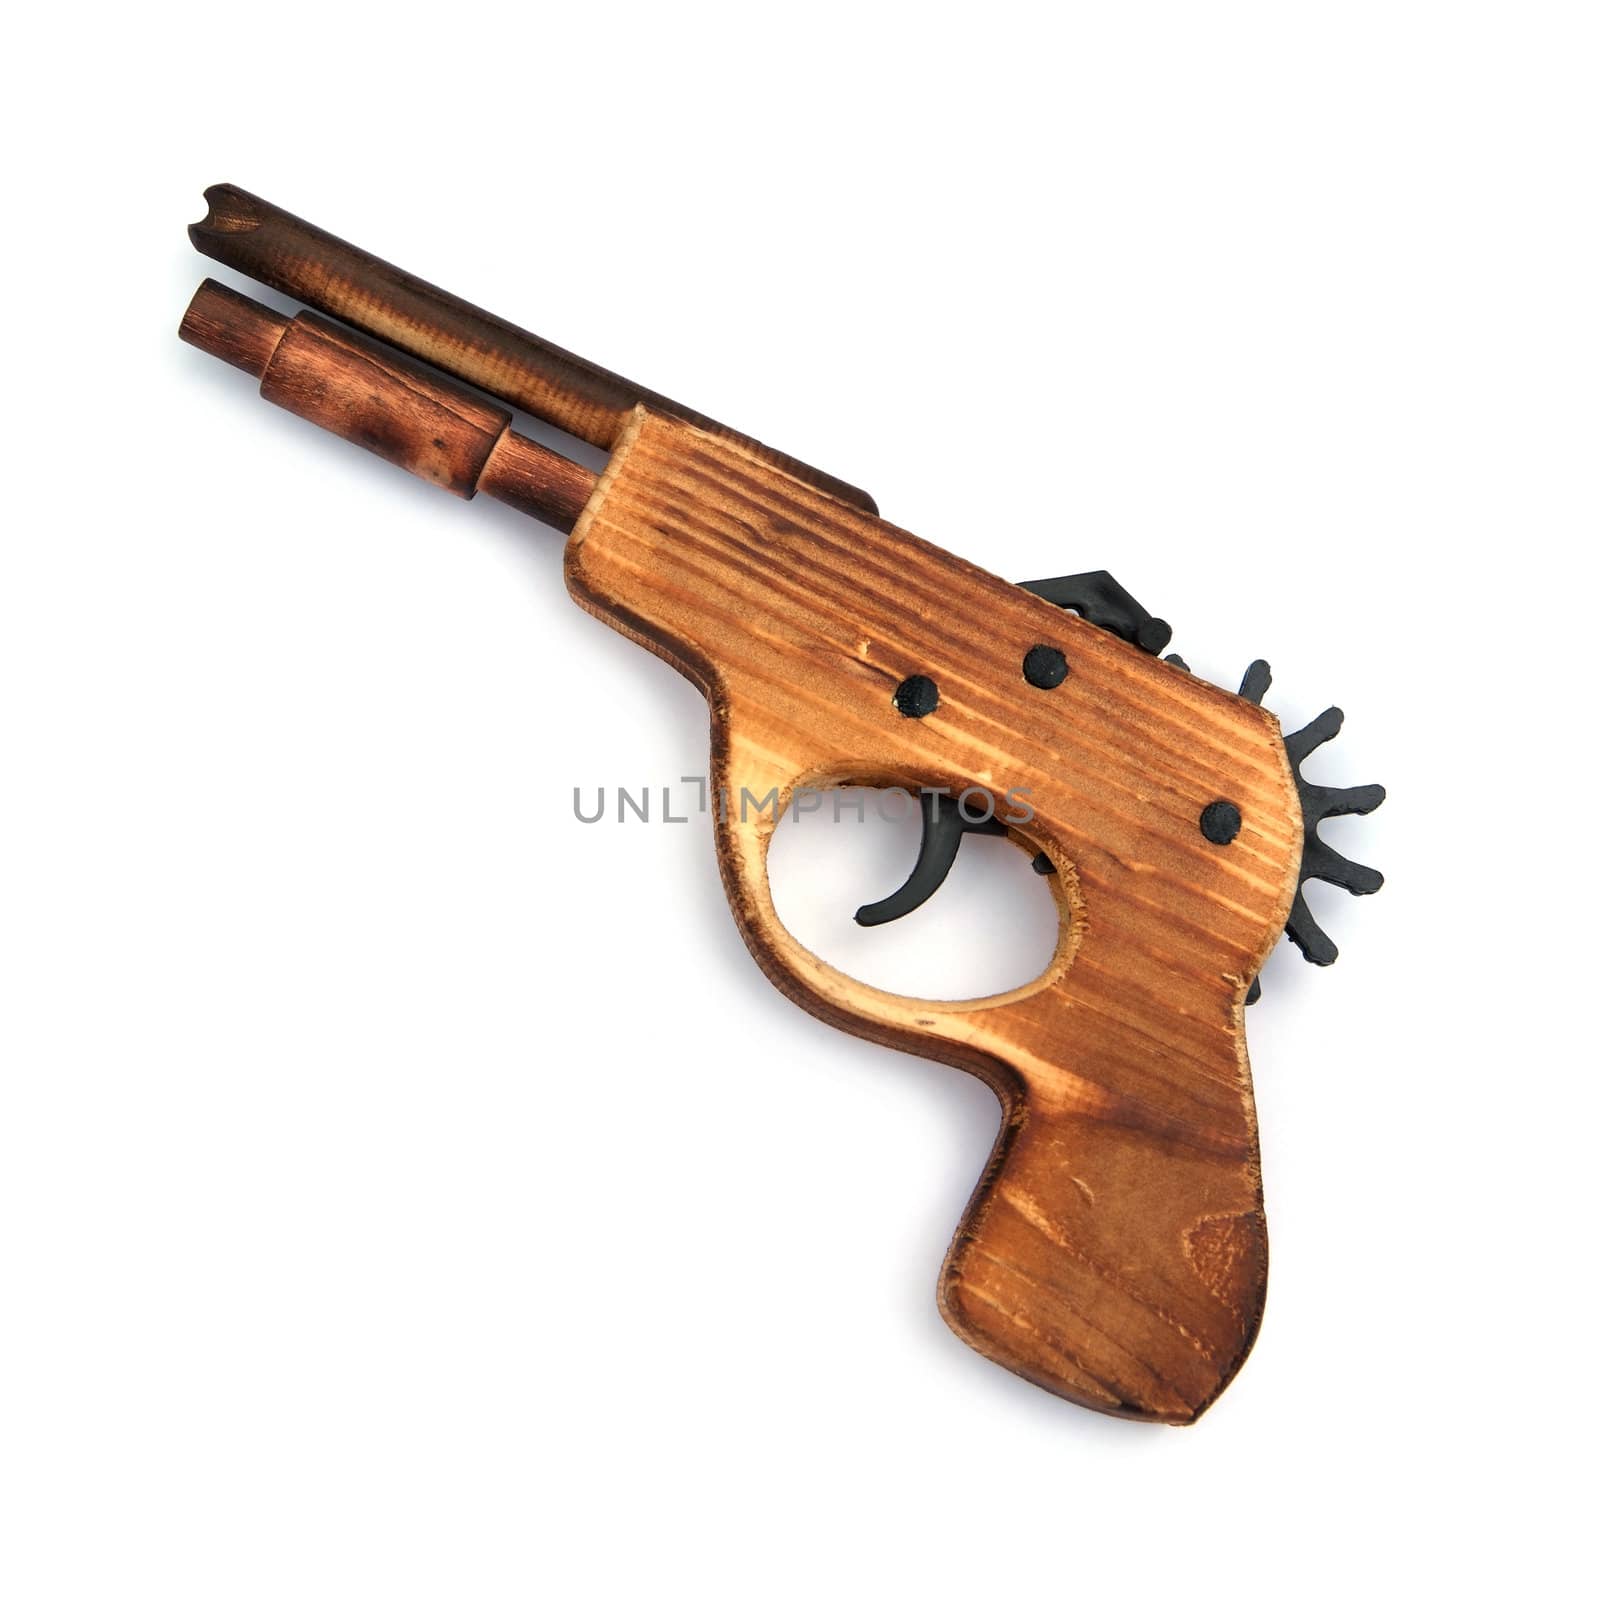 Toy wooden gun , on a white background  by opasstudio